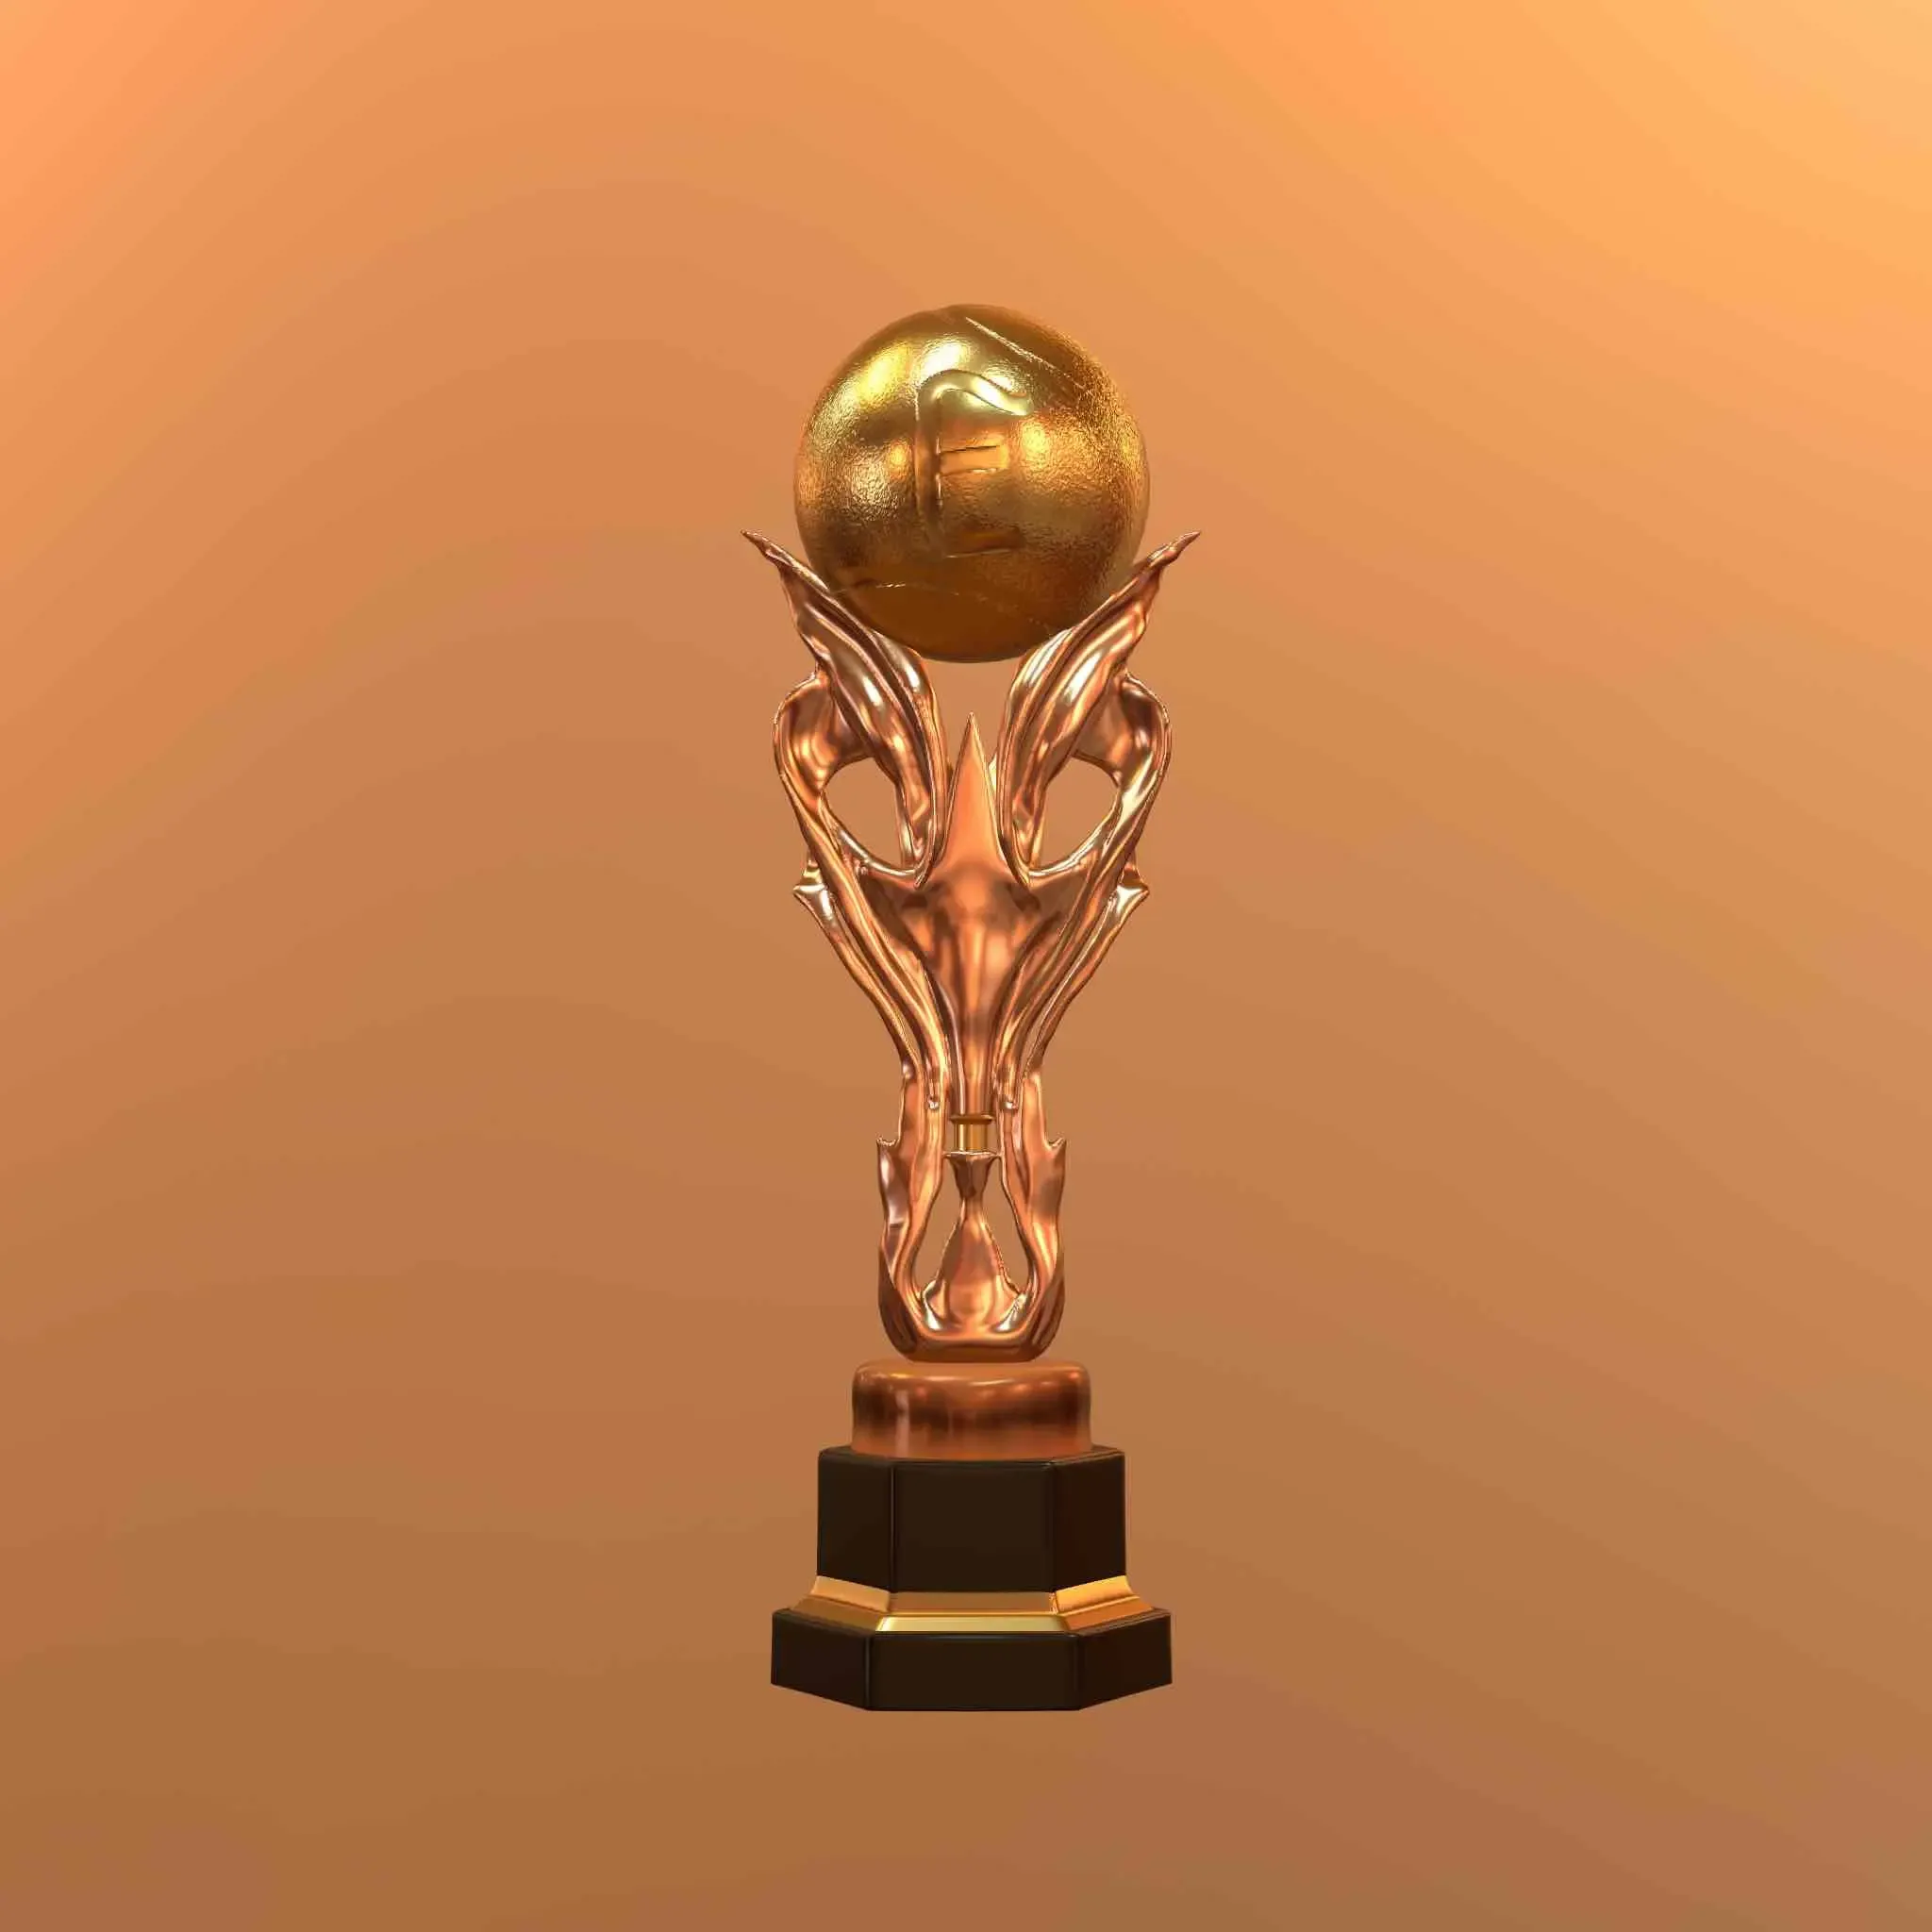 Enoder’s trophy